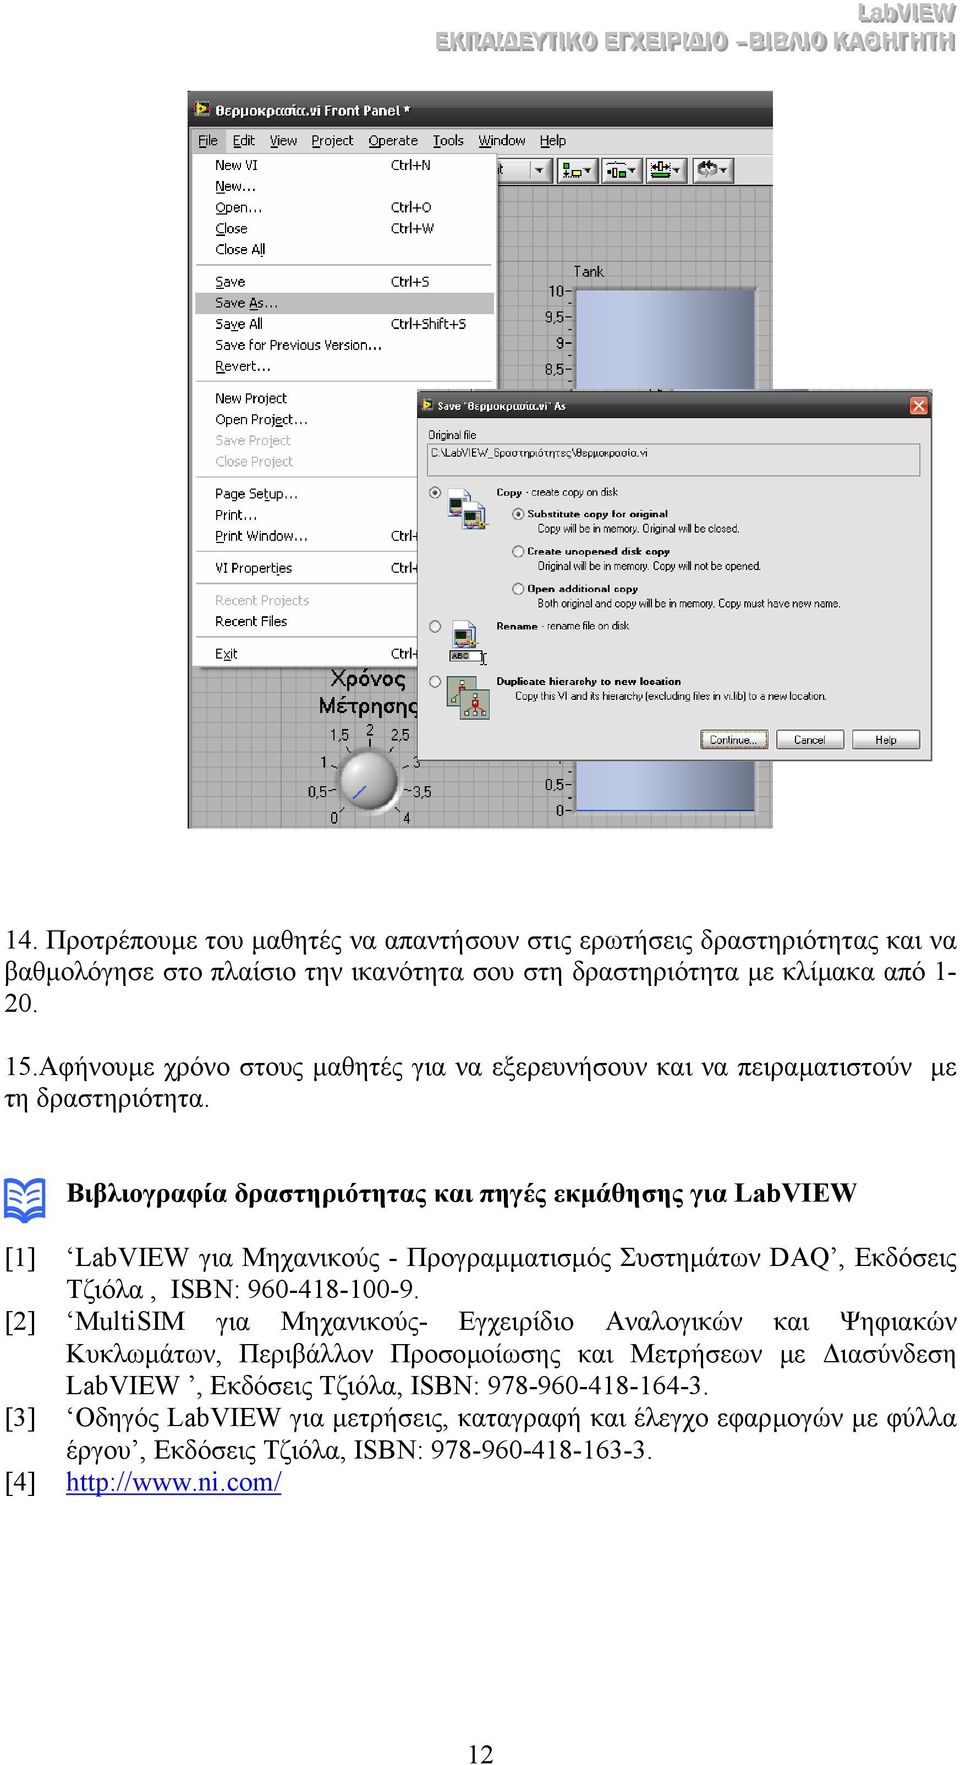 Βιβλιογραφία δραστηριότητας και πηγές εκµάθησης για LabVIEW [1] LabVIEW για Μηχανικούς - Προγραµµατισµός Συστηµάτων DAQ, Εκδόσεις Τζιόλα, ISBN: 960-418-100-9.